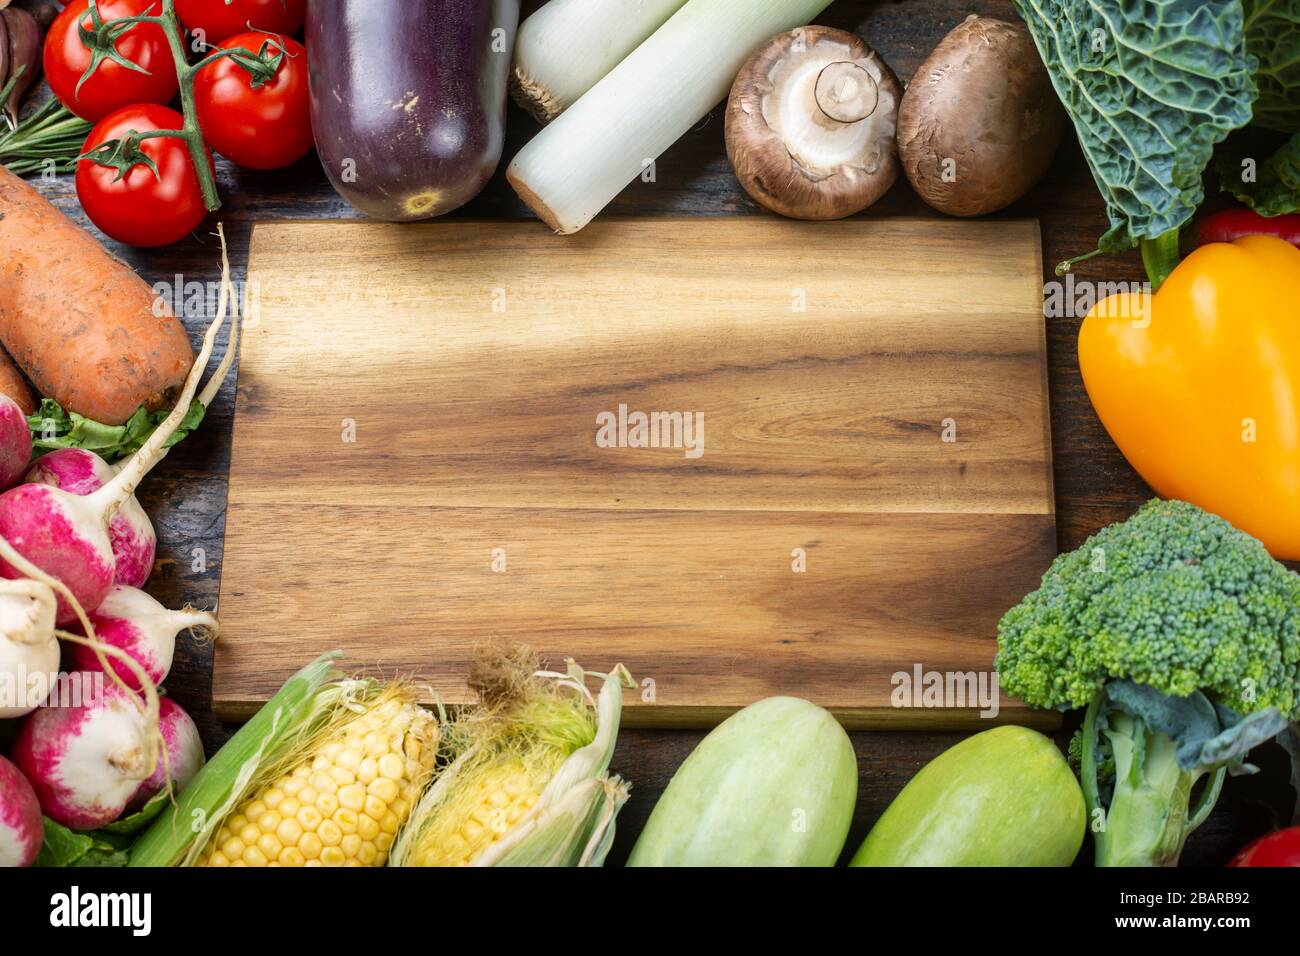 Gesunder Lebensmittelhintergrund. Konzept gesunde Ernährung, frisches Gemüse. Veganer- oder Diät-Food-Konzept. Hintergrundlayout mit freiem Textbereich. Stockfoto